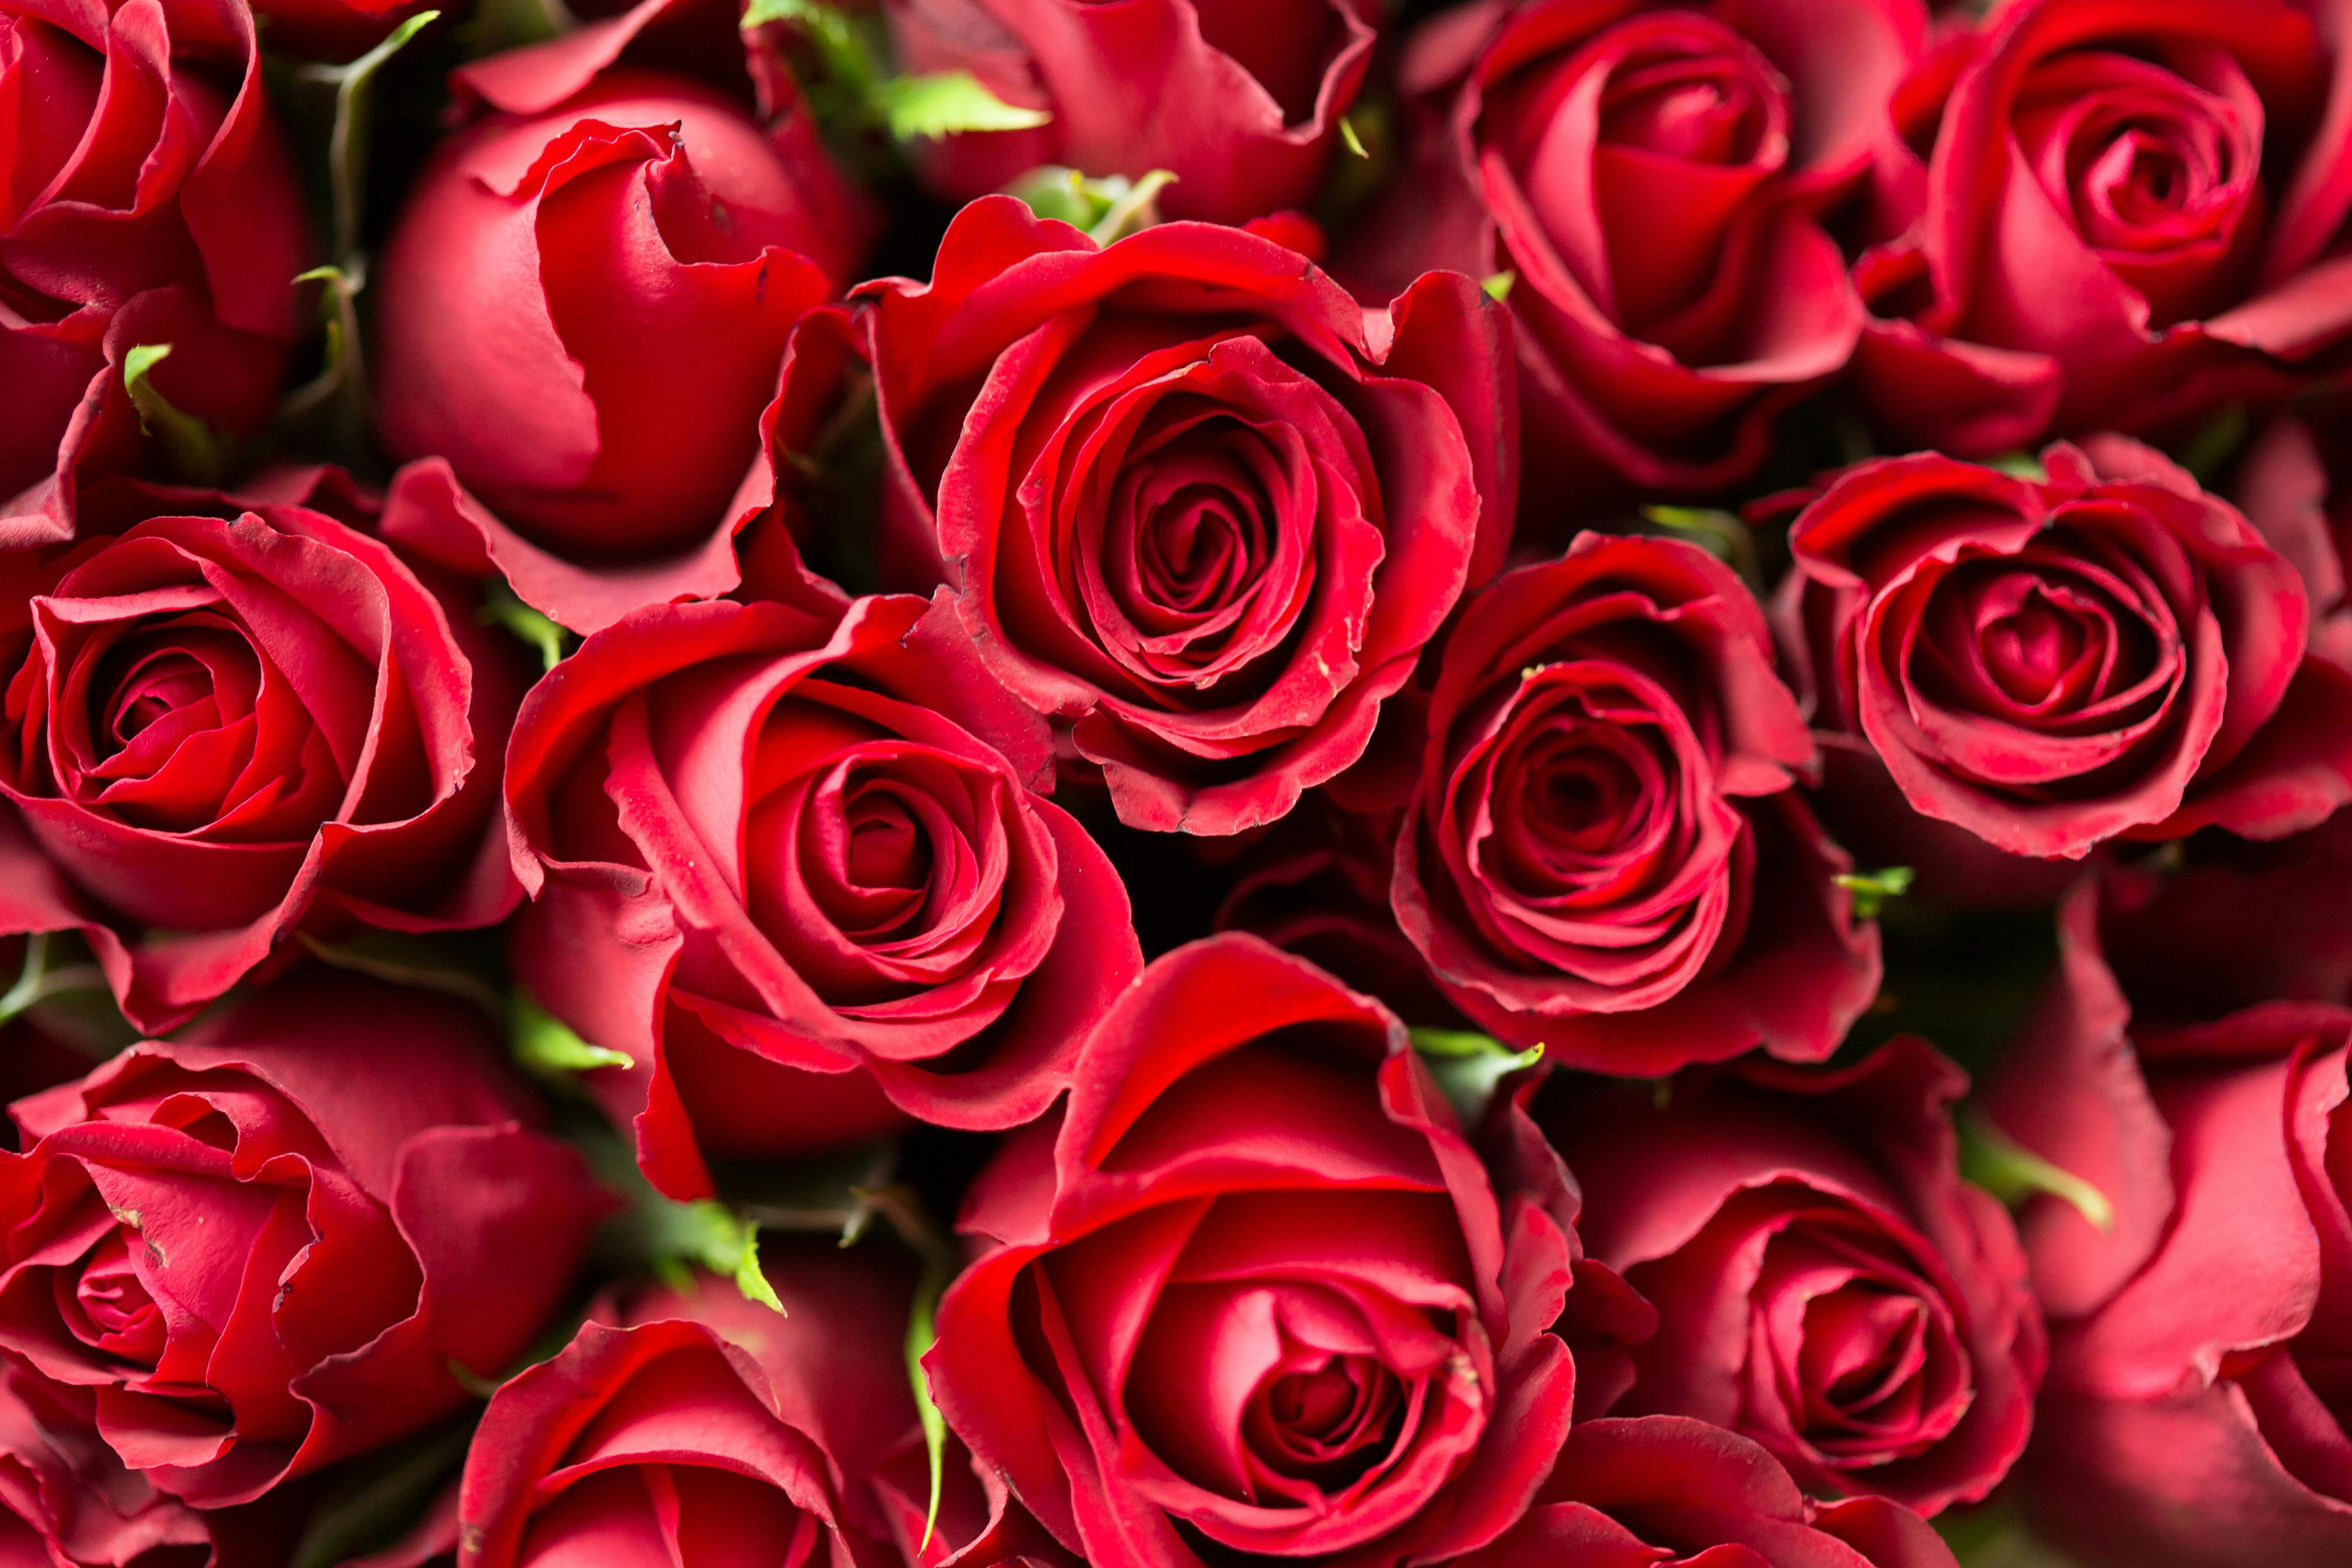 50 Beautiful Pictures of Roses Wallpaper  WallpaperSafari